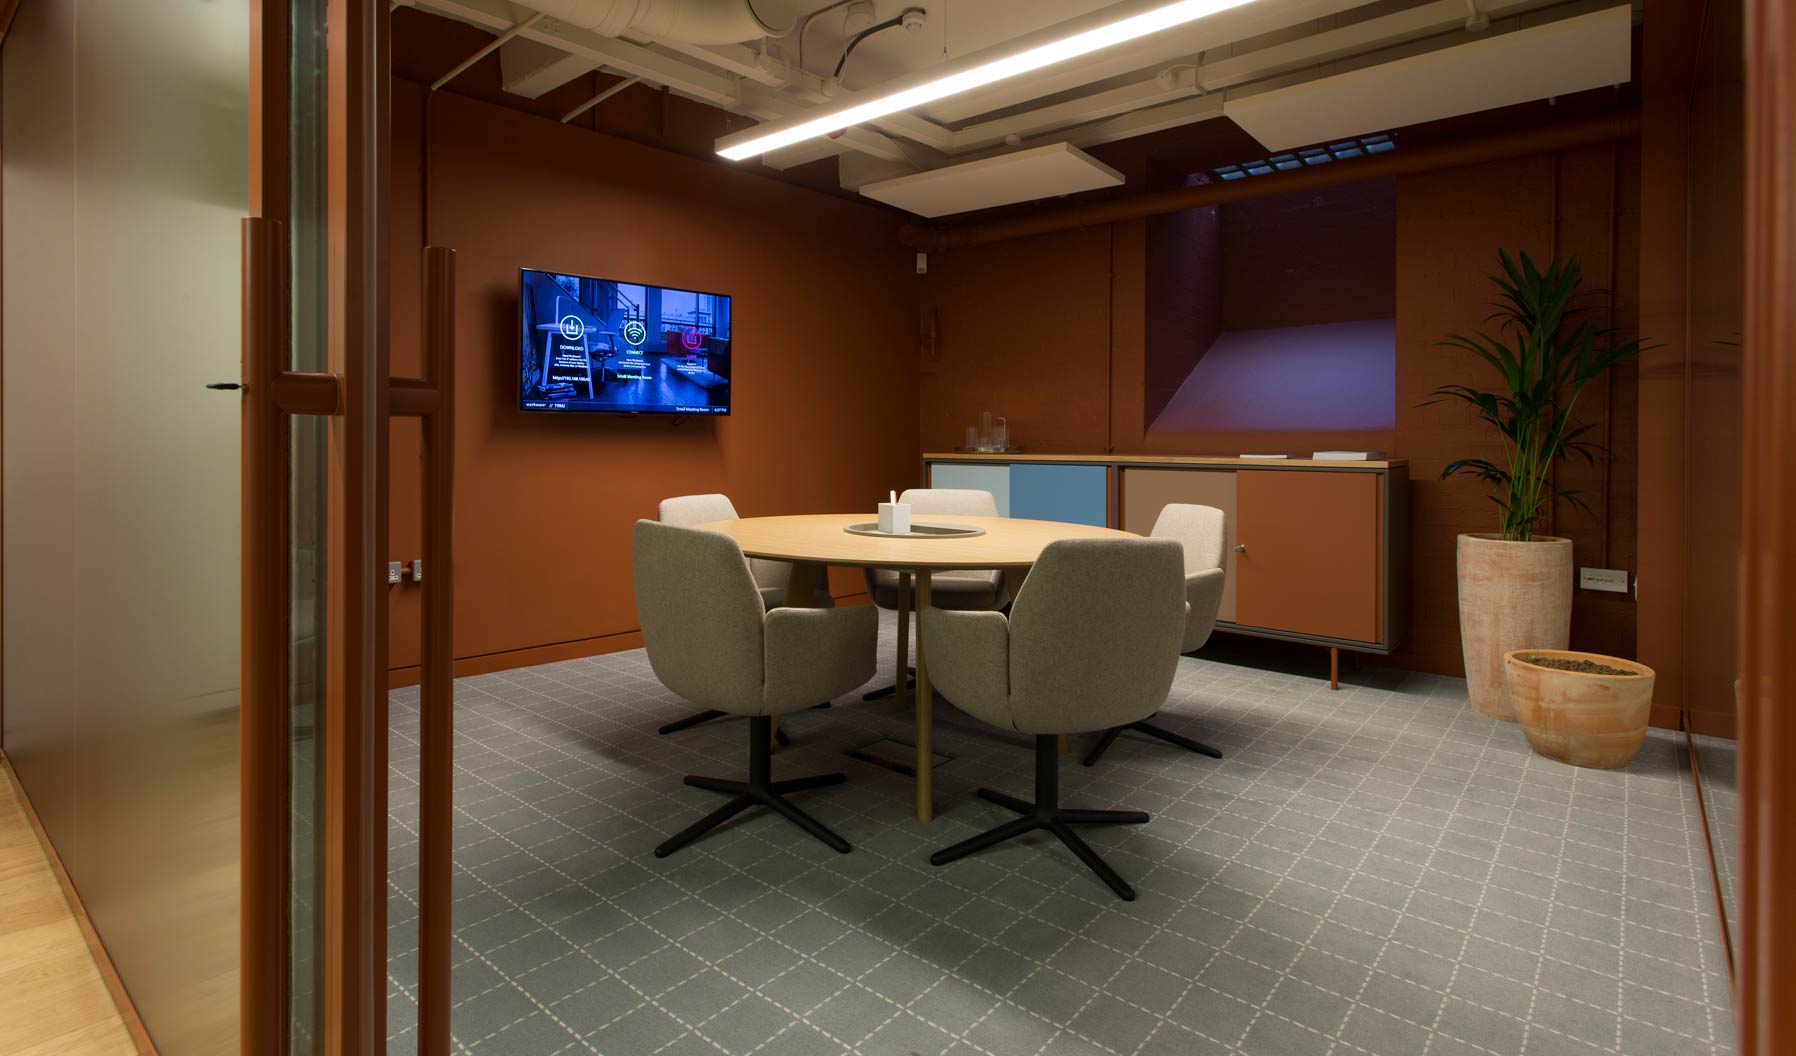 Poppy Stühle und Workware-Technologie verbinden Komfort und Informationsaustausch, um den idealen Besprechungsraum zu schaffen.